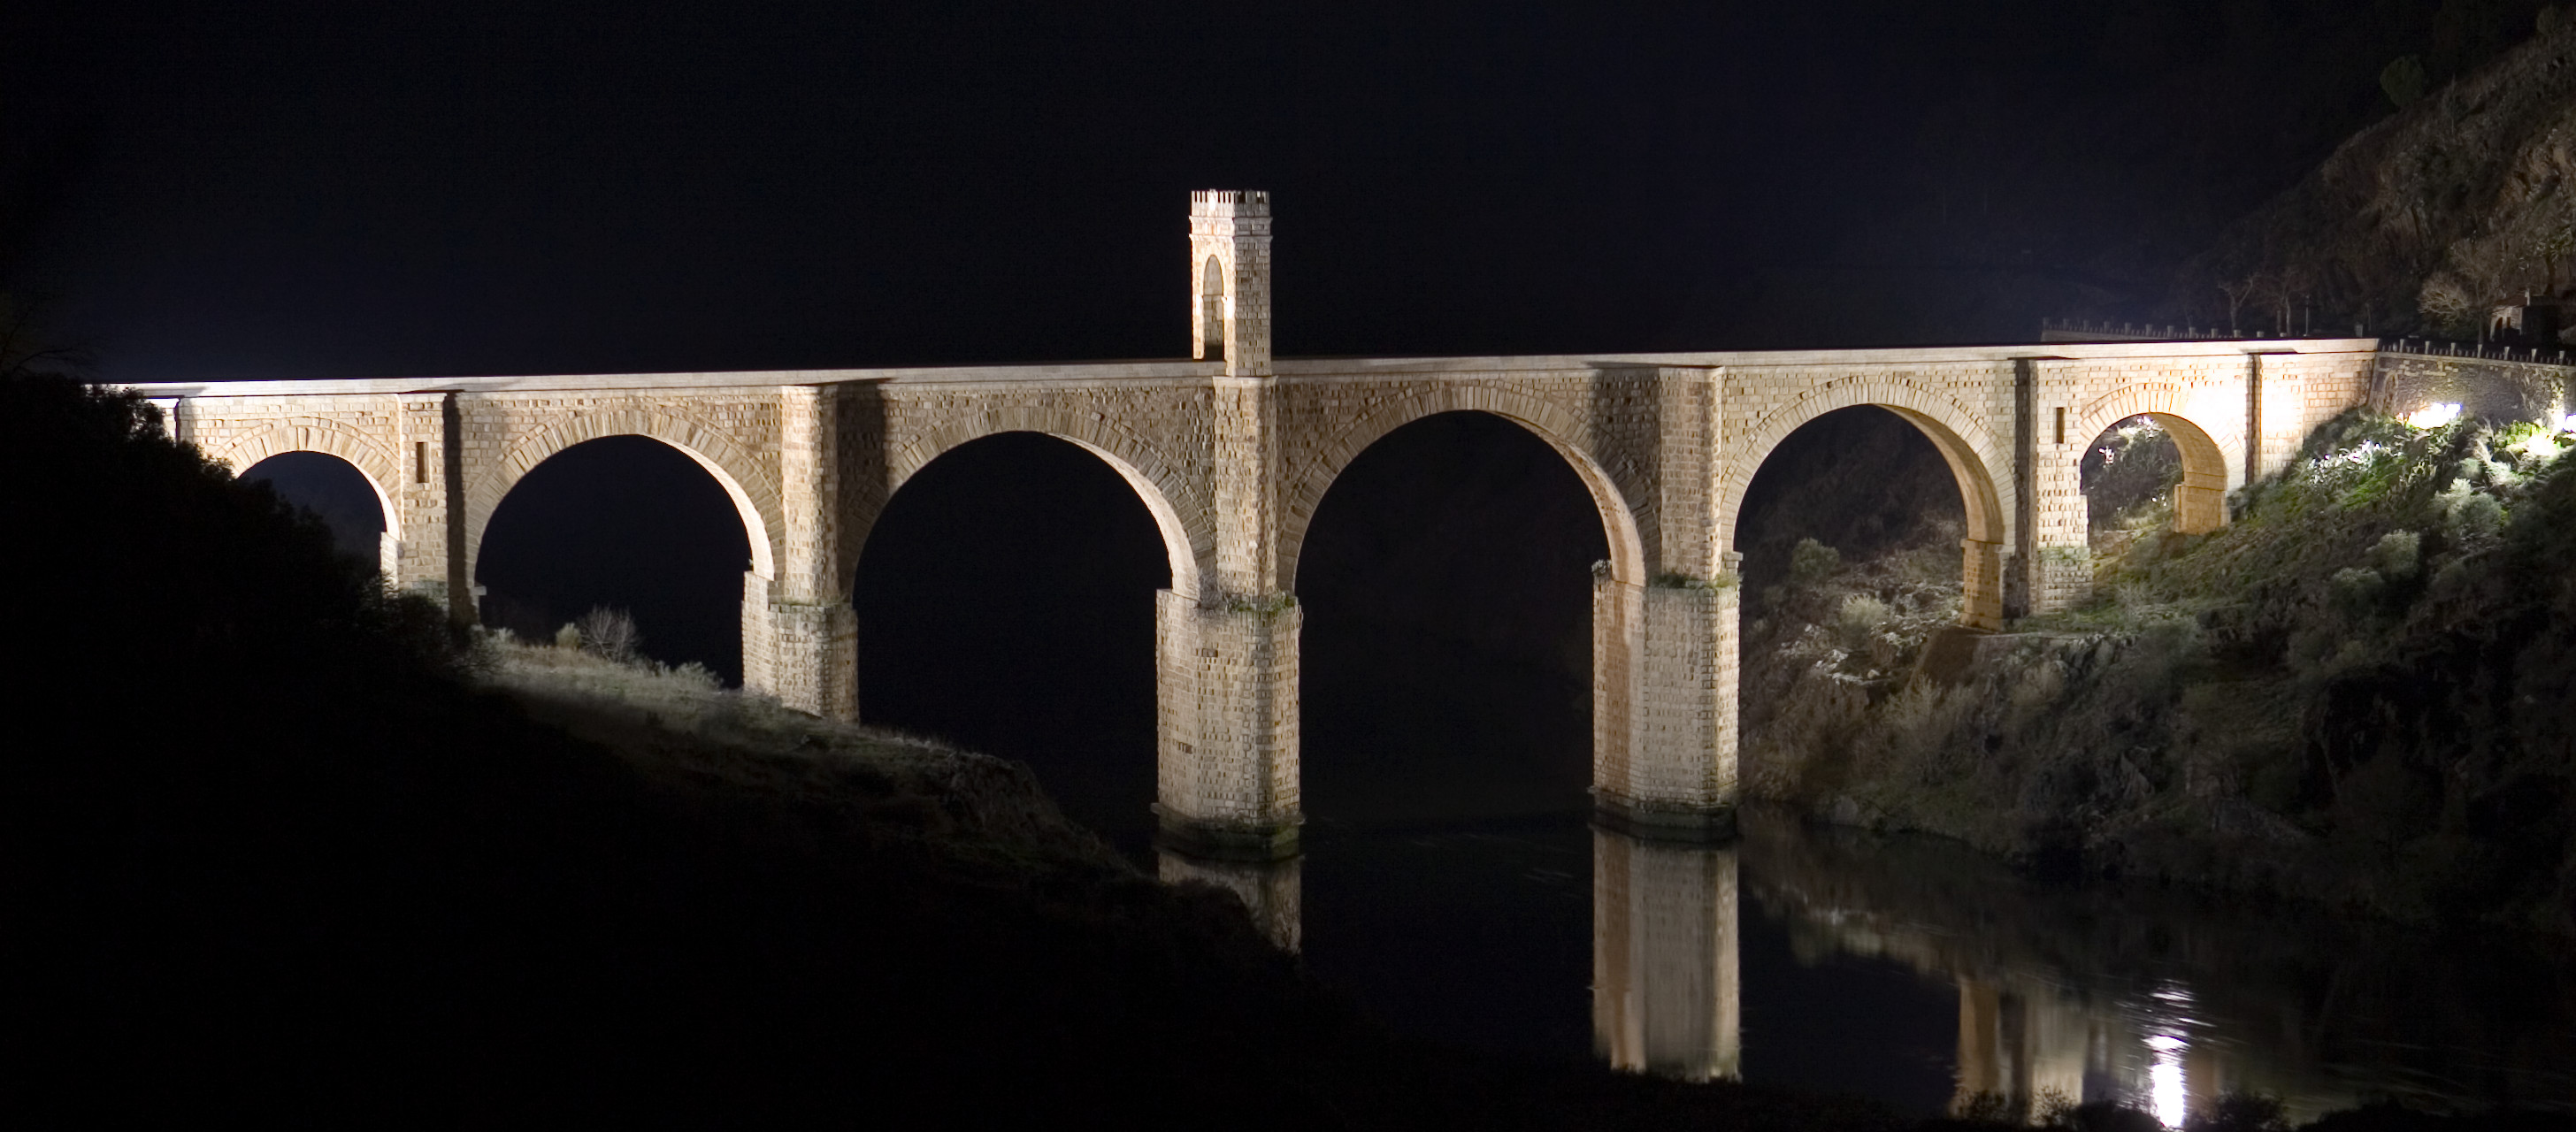 Resultado de imagen para puente romano de alcantara